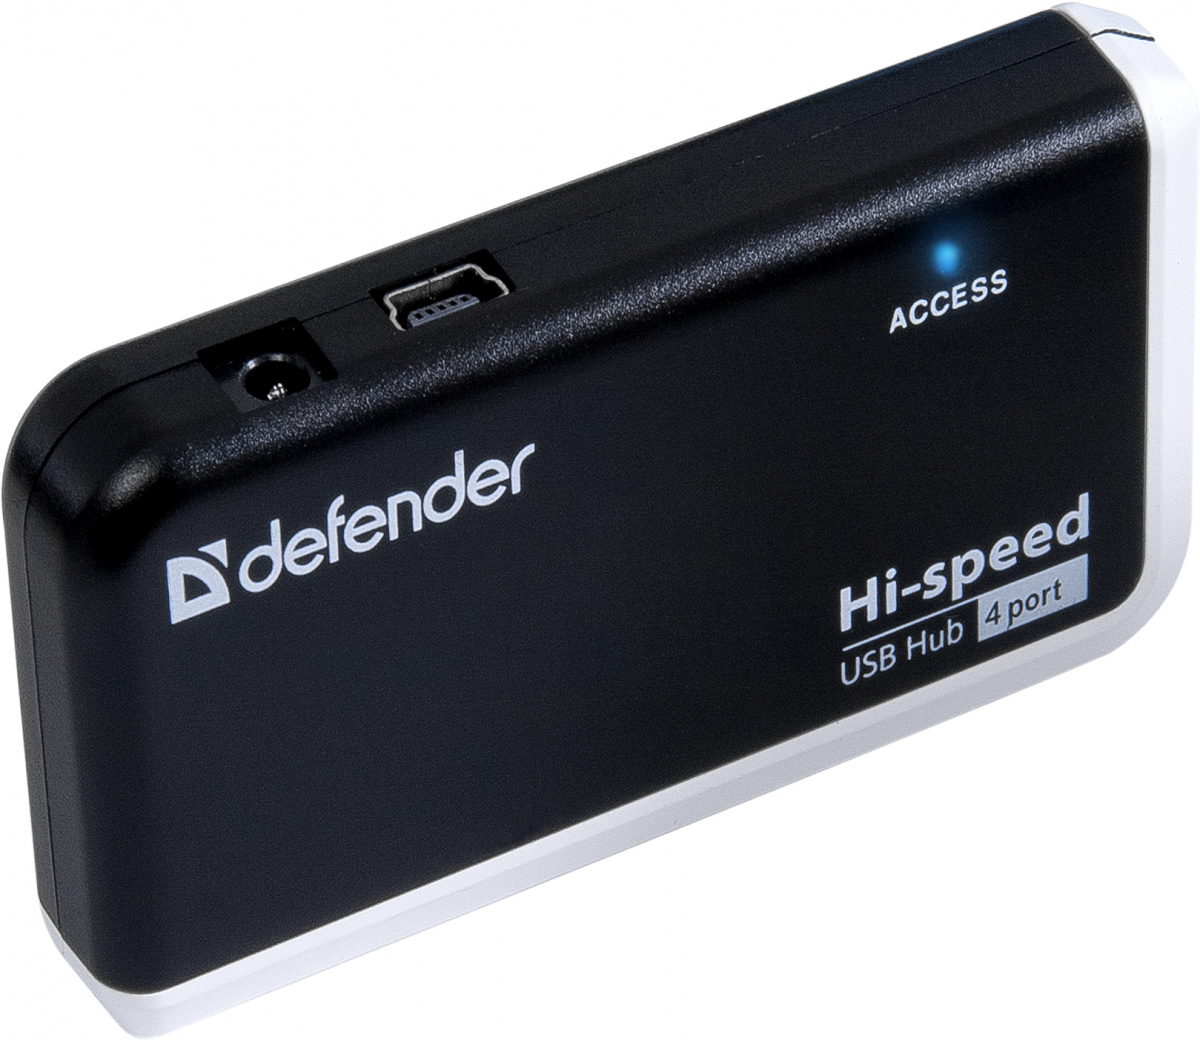 Defender quadro. USB Hub 4 Port Defender Quadro Infix USB 2.0. Концентратор Defender Quadro Infix USB2.0, 4 порта. Концентратор USB 2.0 Defender Quadro Iron. USB-концентратор Defender Quadro PROMT (83200), разъемов: 4.